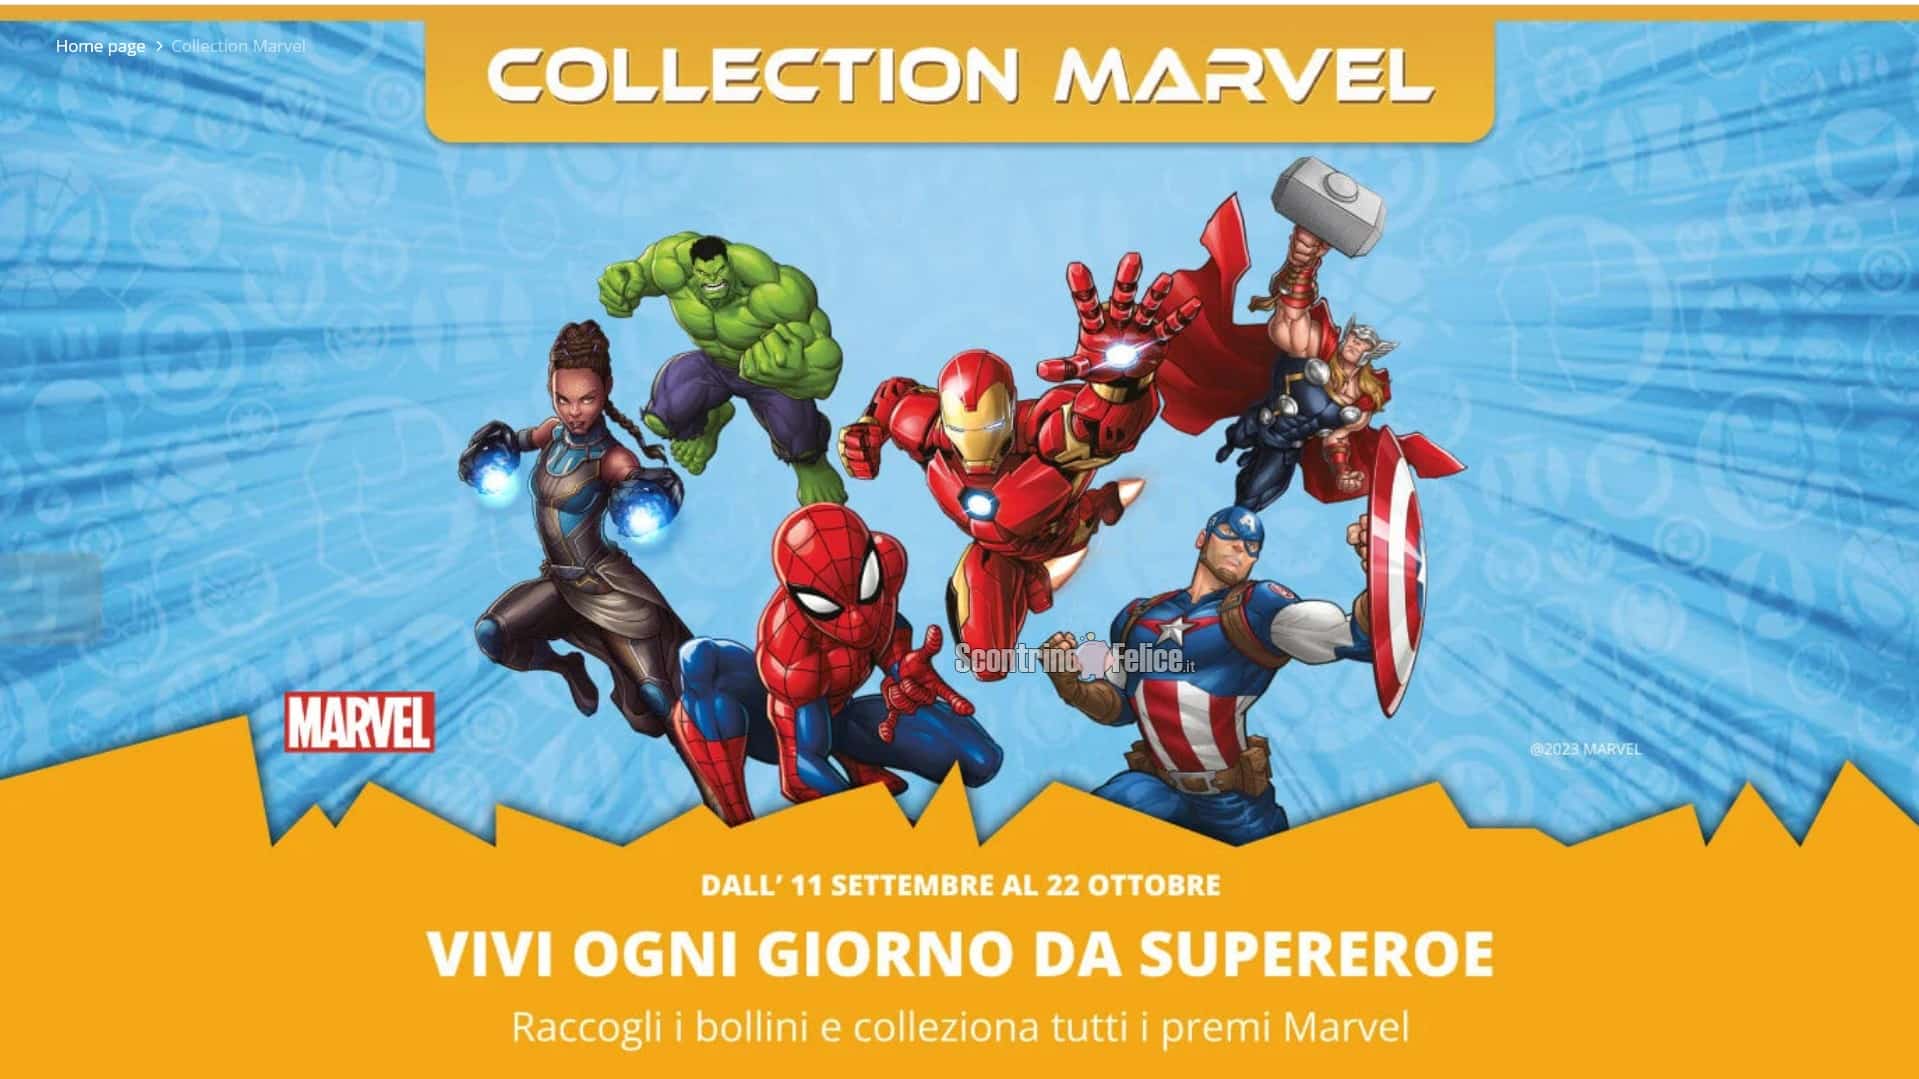 Raccolta punti "Collection Marvel" da Carrefour: scopri come funziona!